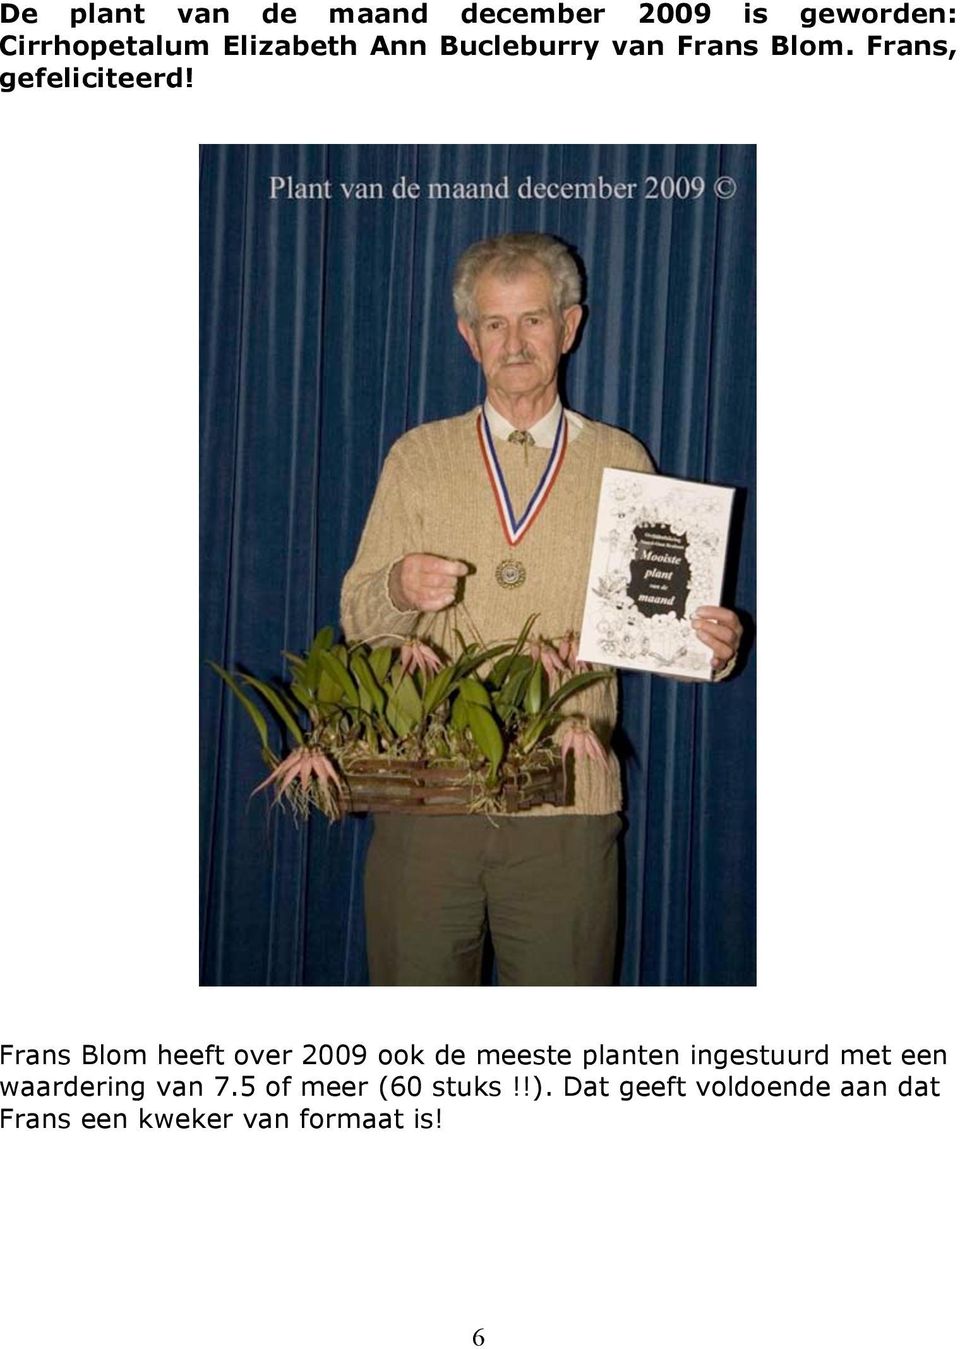 Frans Blom heeft over 2009 ook de meeste planten ingestuurd met een